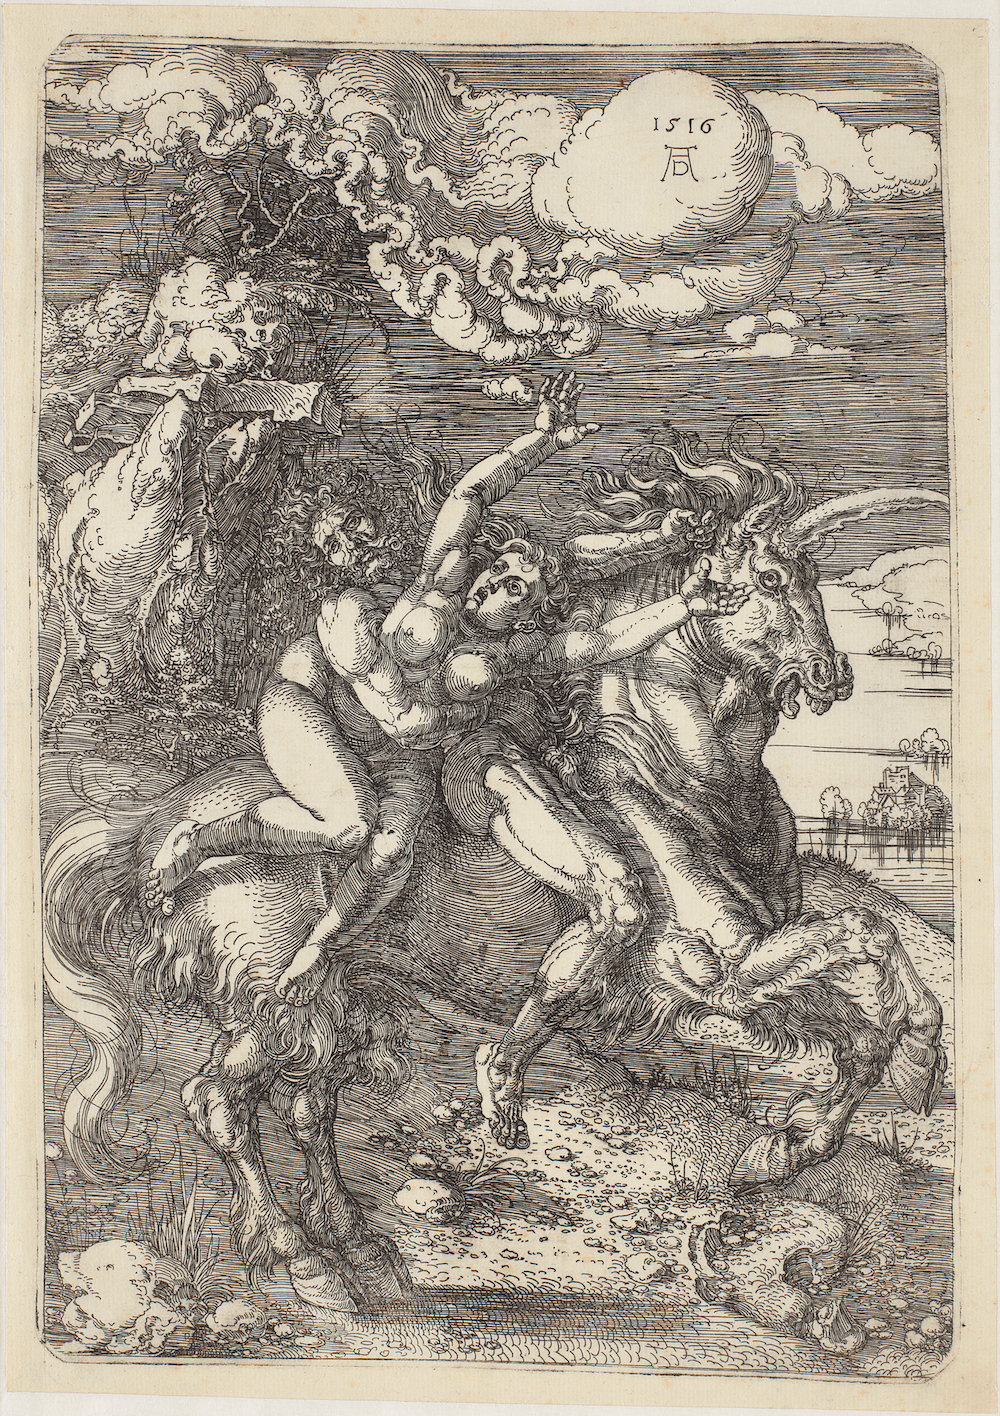 Похищение на единороге by Альбрехт Дюрер - 1516 - 393 x 230 мм 